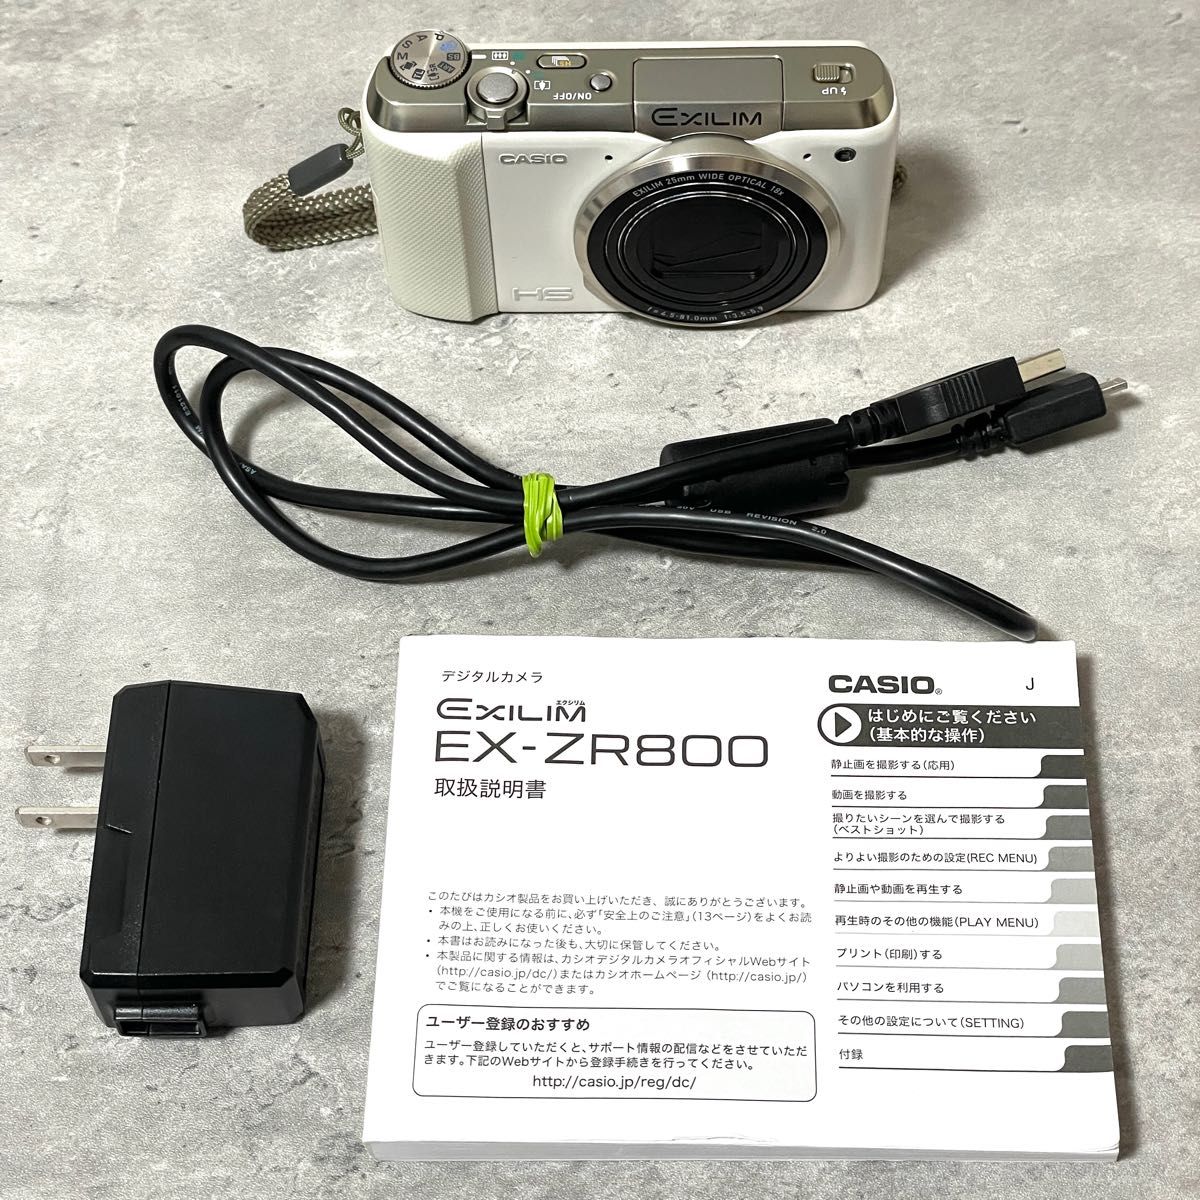 美品 CASIO カシオ EXILIM EXZR800 デジタルカメラ デジカメ コンデジ